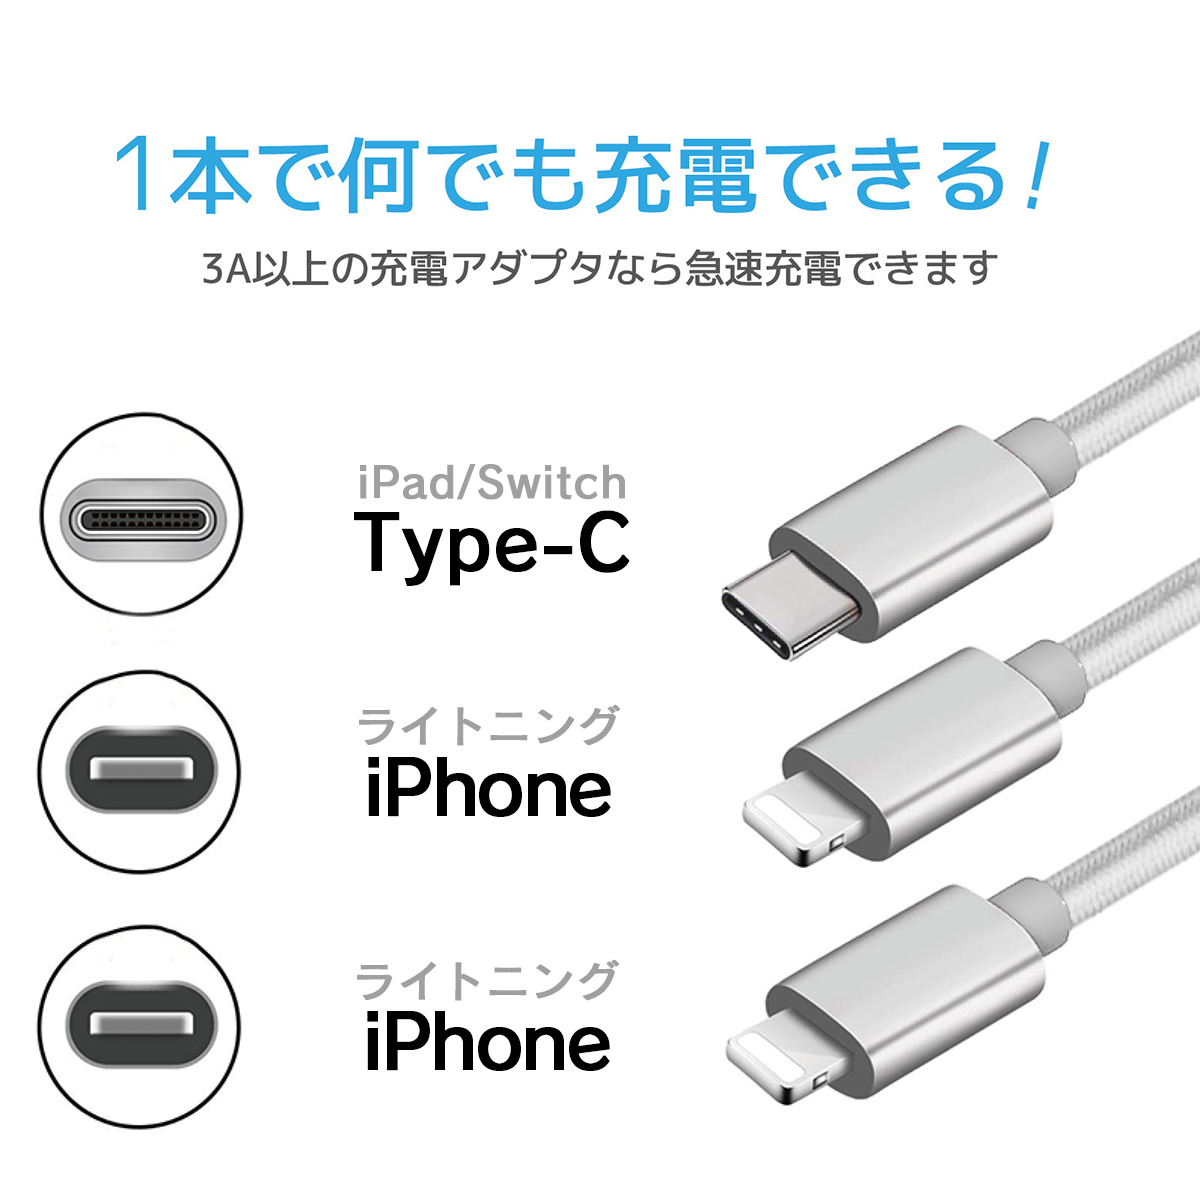 ライトニングケーブル iPhone 充電 ケーブル 3in1 USB スマホ タイプc